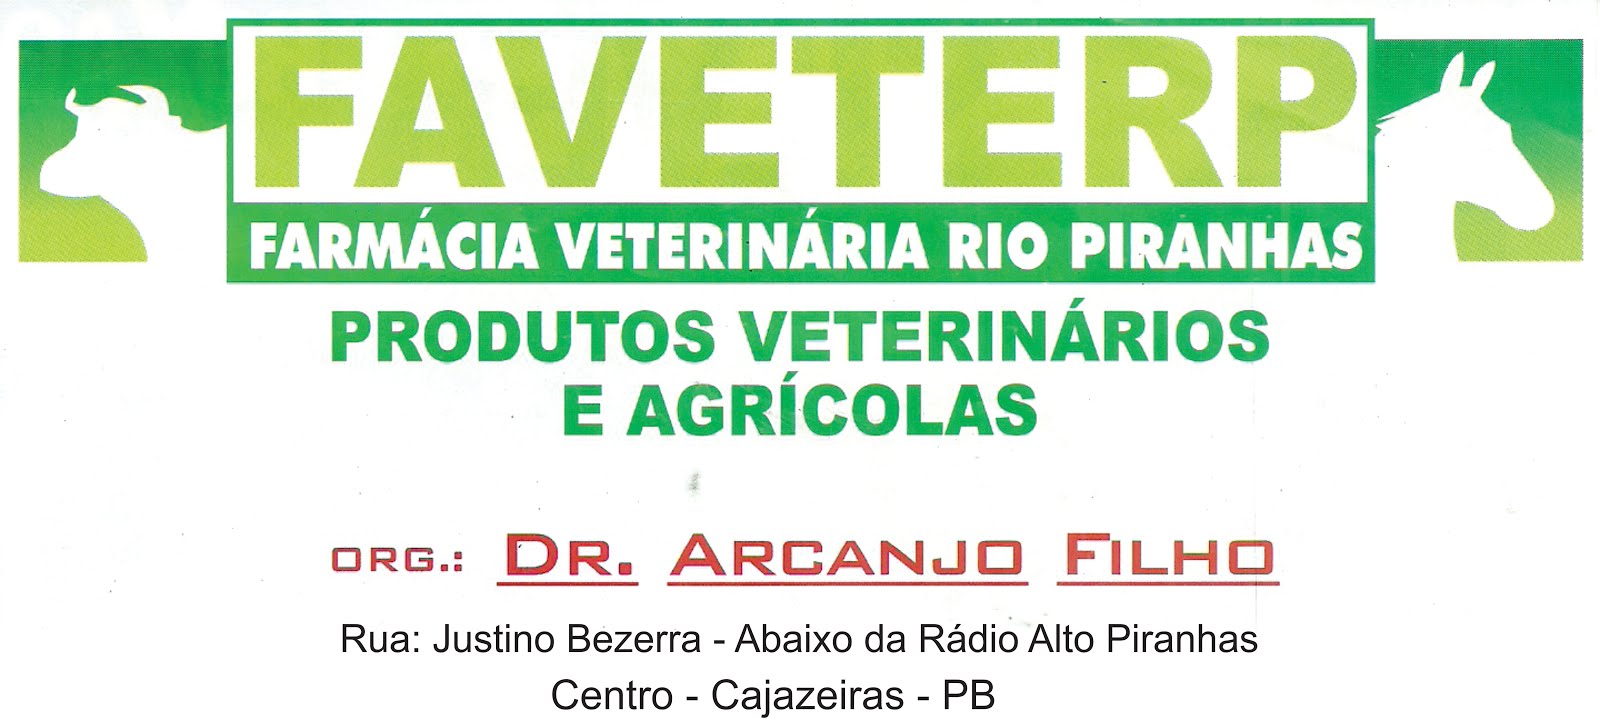 A FARMÁCIA  DE DR ARCANJO  LA TEM  ALMANAQUE DO SERTÃO  PARA VENDER